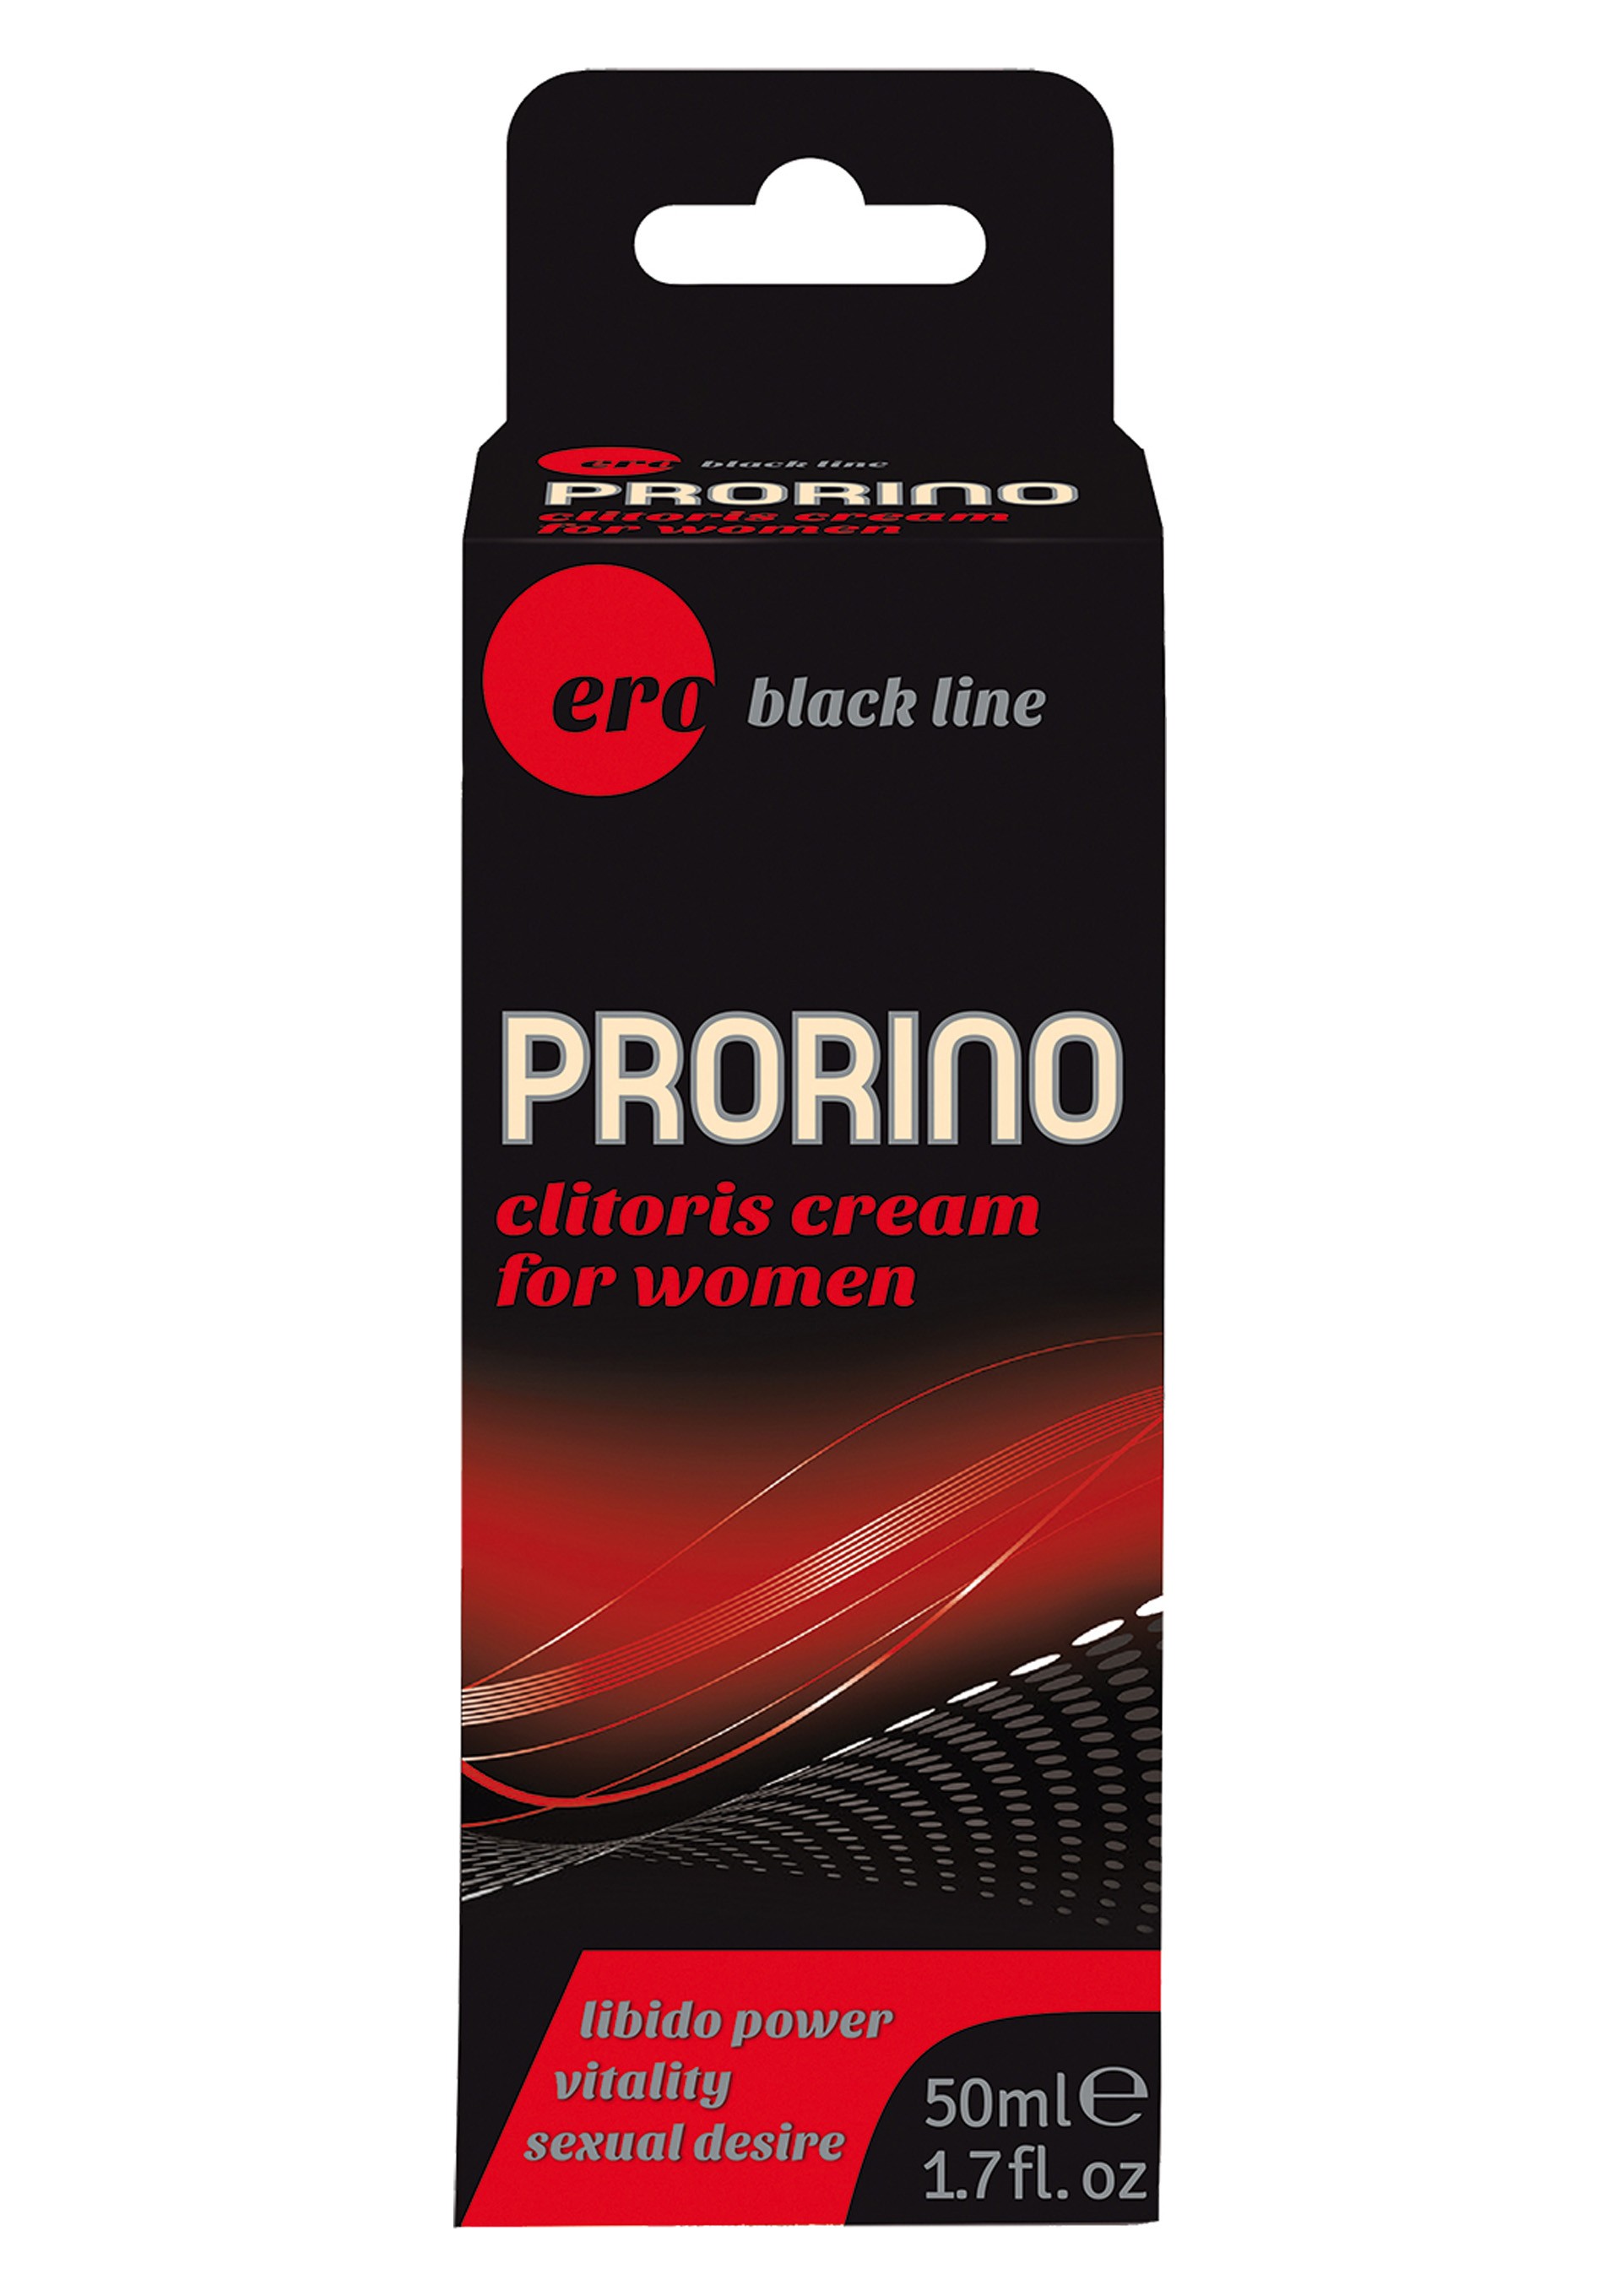 Hot Ero Prorino Kadınlara Özel Krem 50 ml